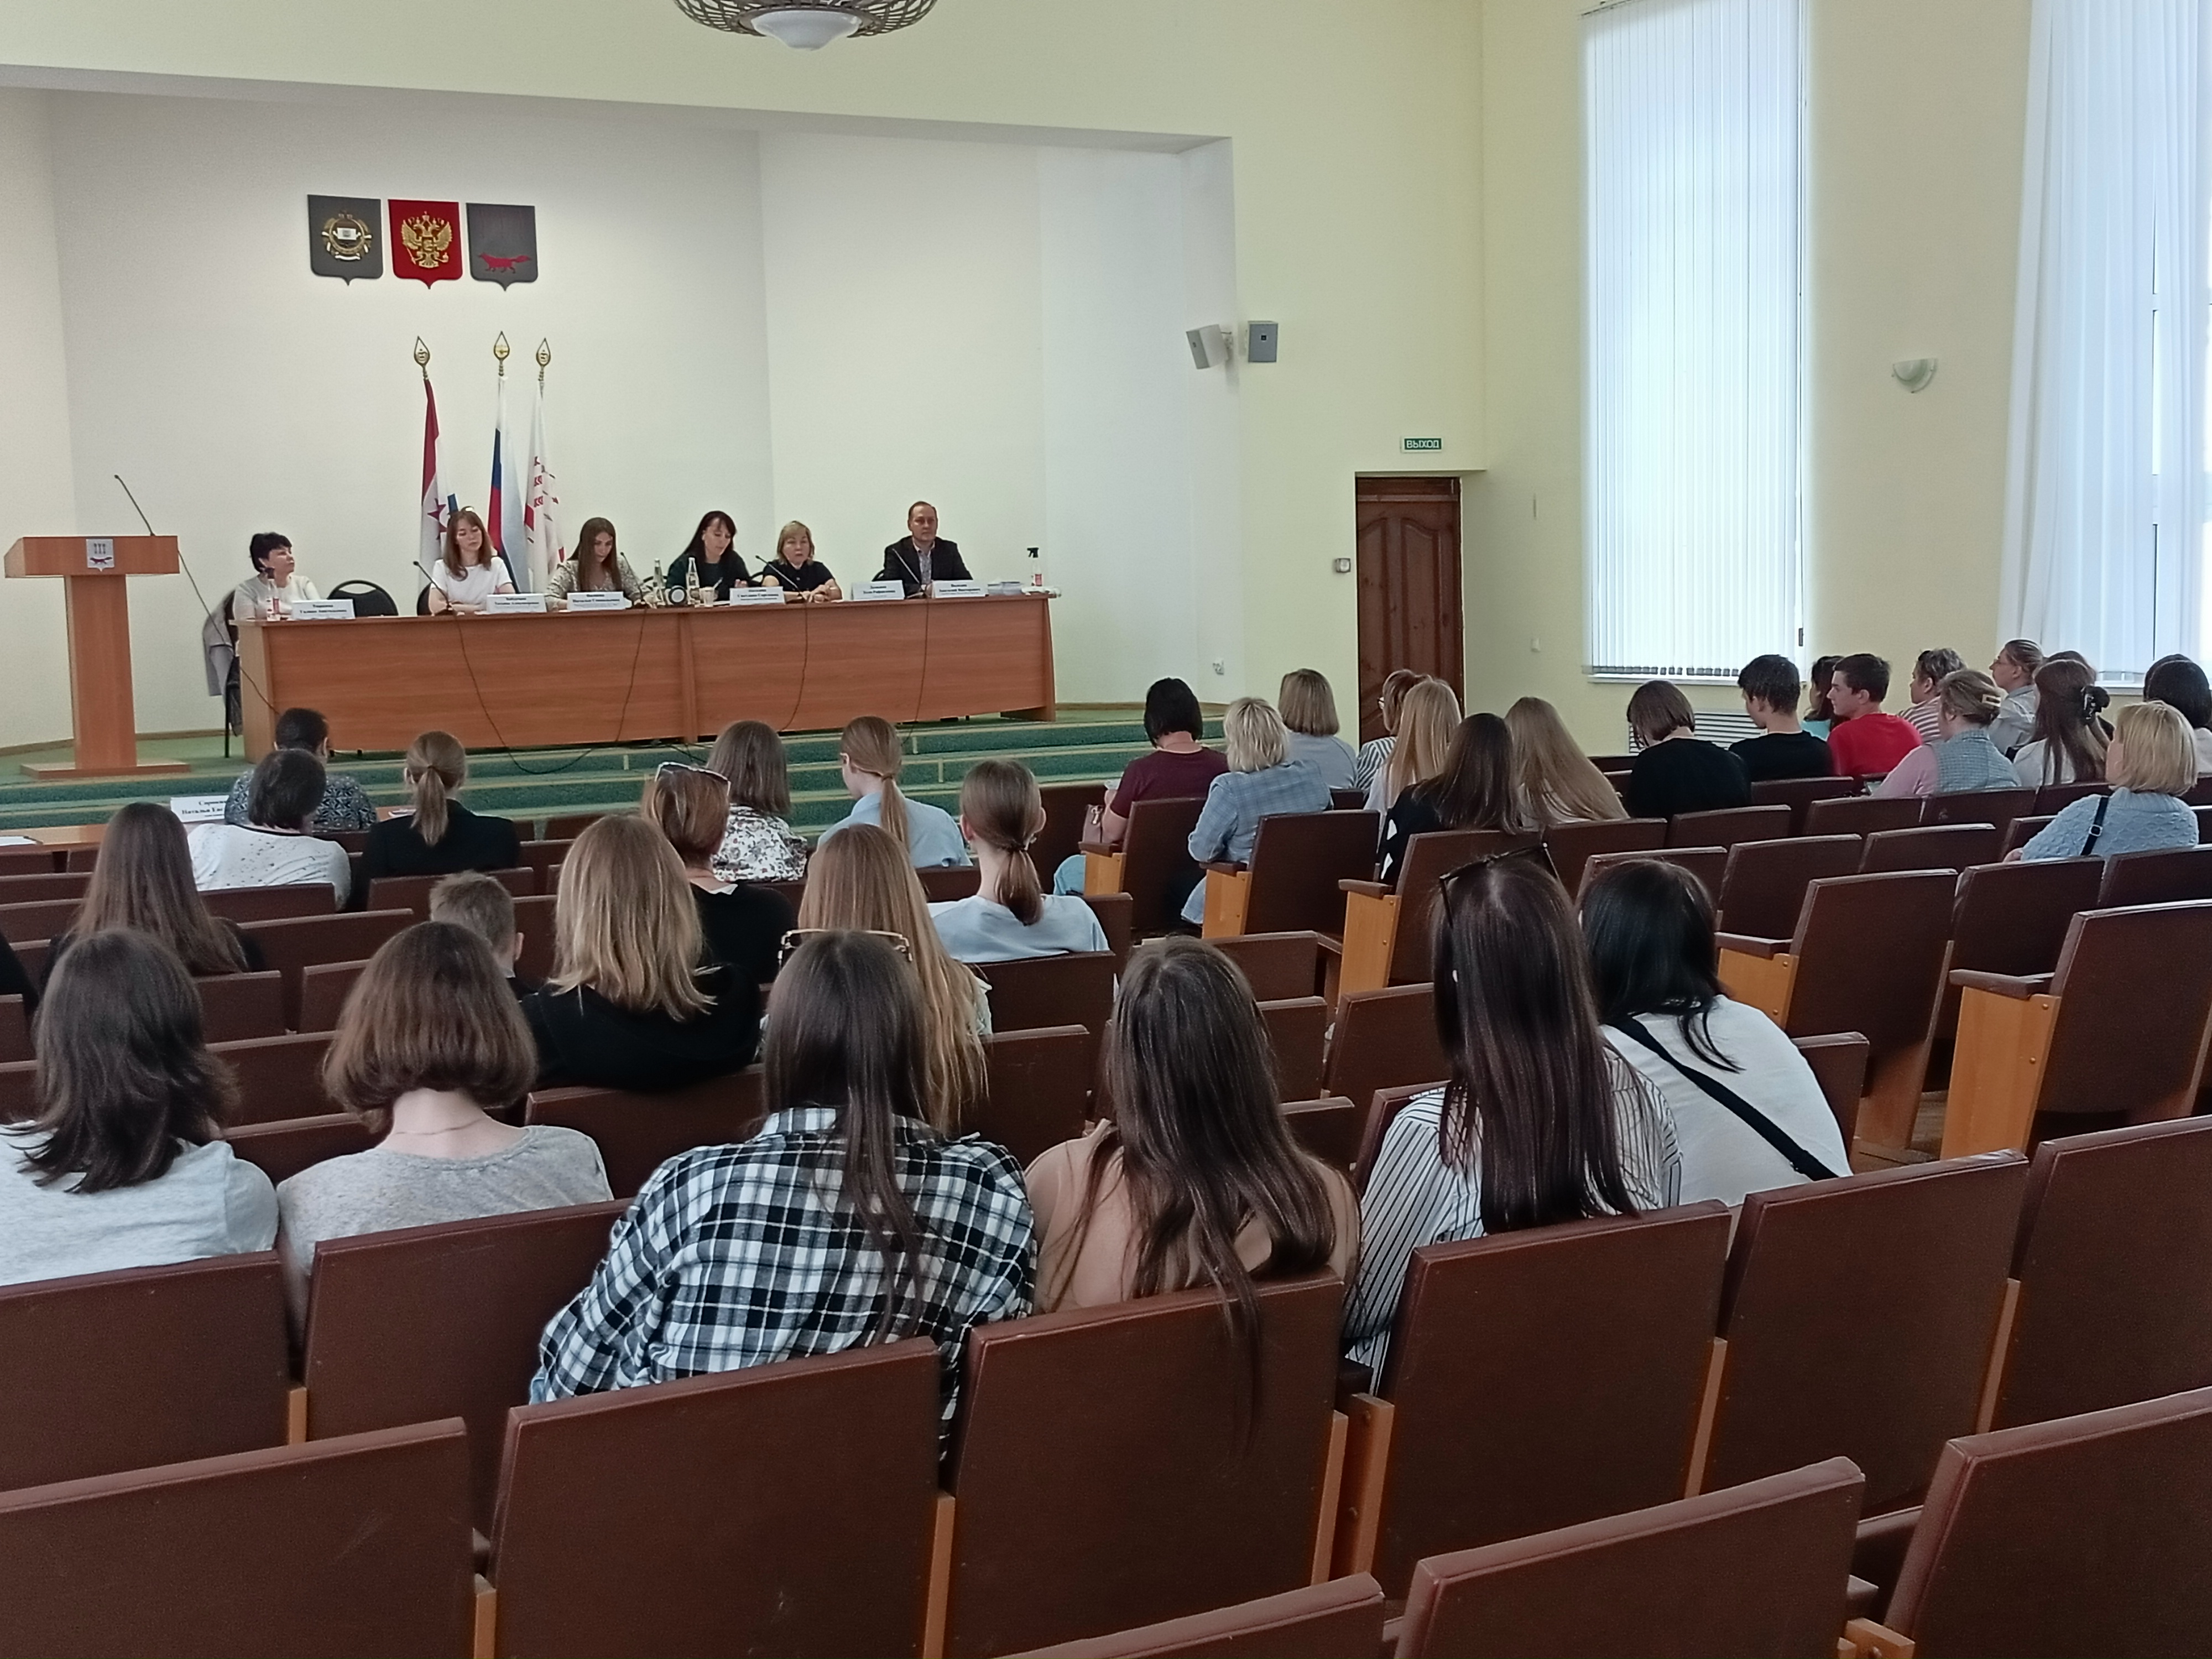 19 мая в Администрации Ленинского района прошла встреча с несовершеннолетними и их представителями по вопросу организации занятости в летний период